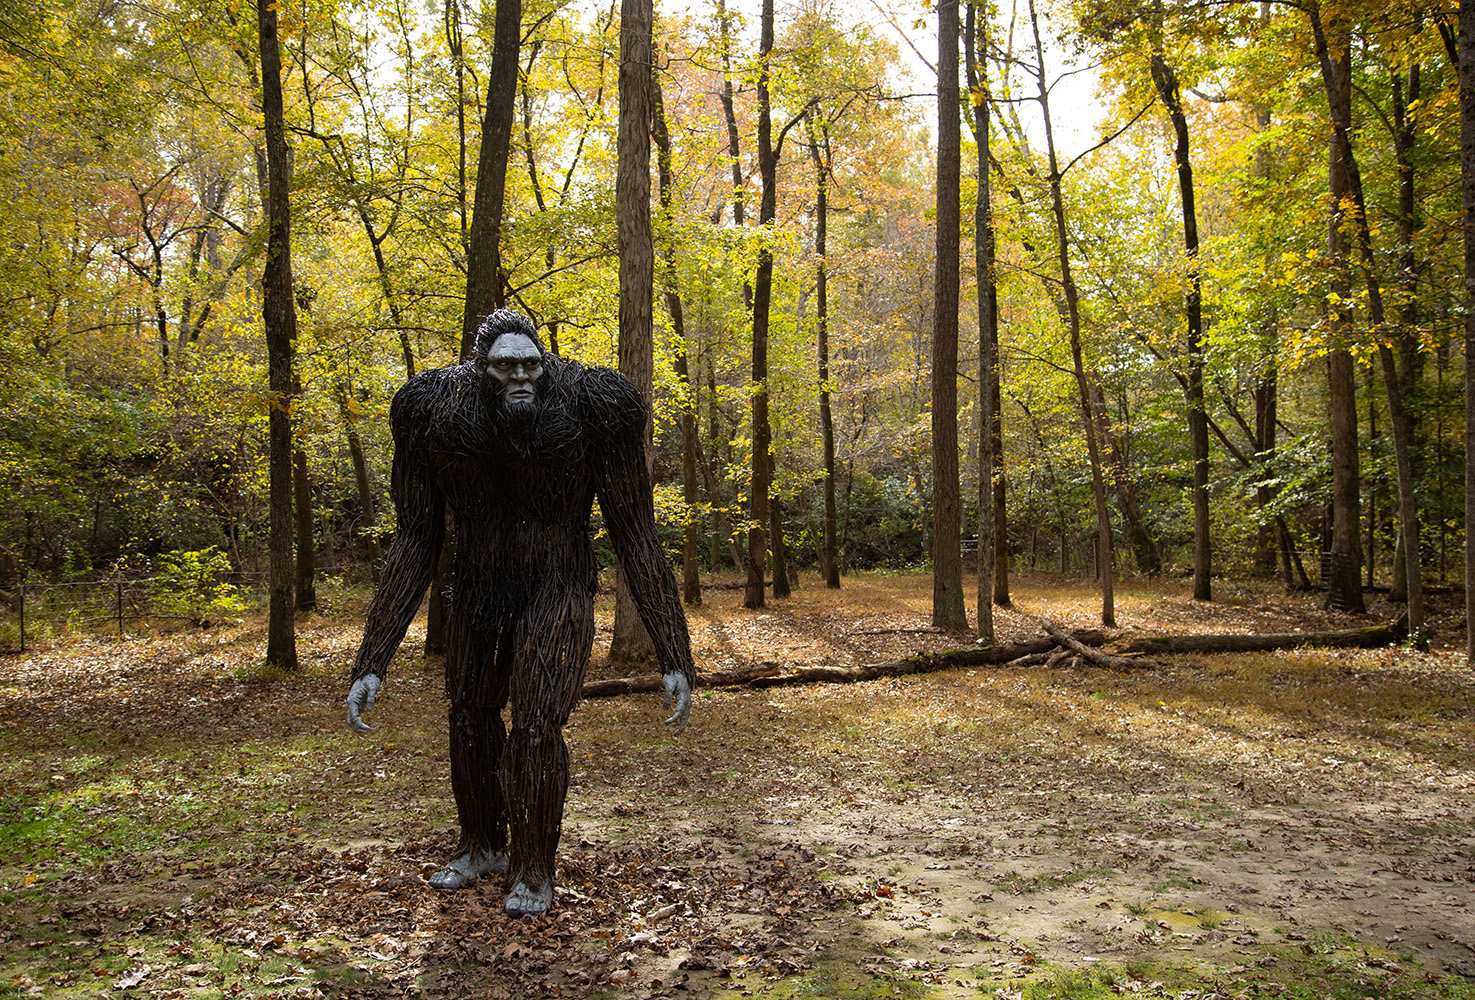 Bigfoot sculpture in the woods